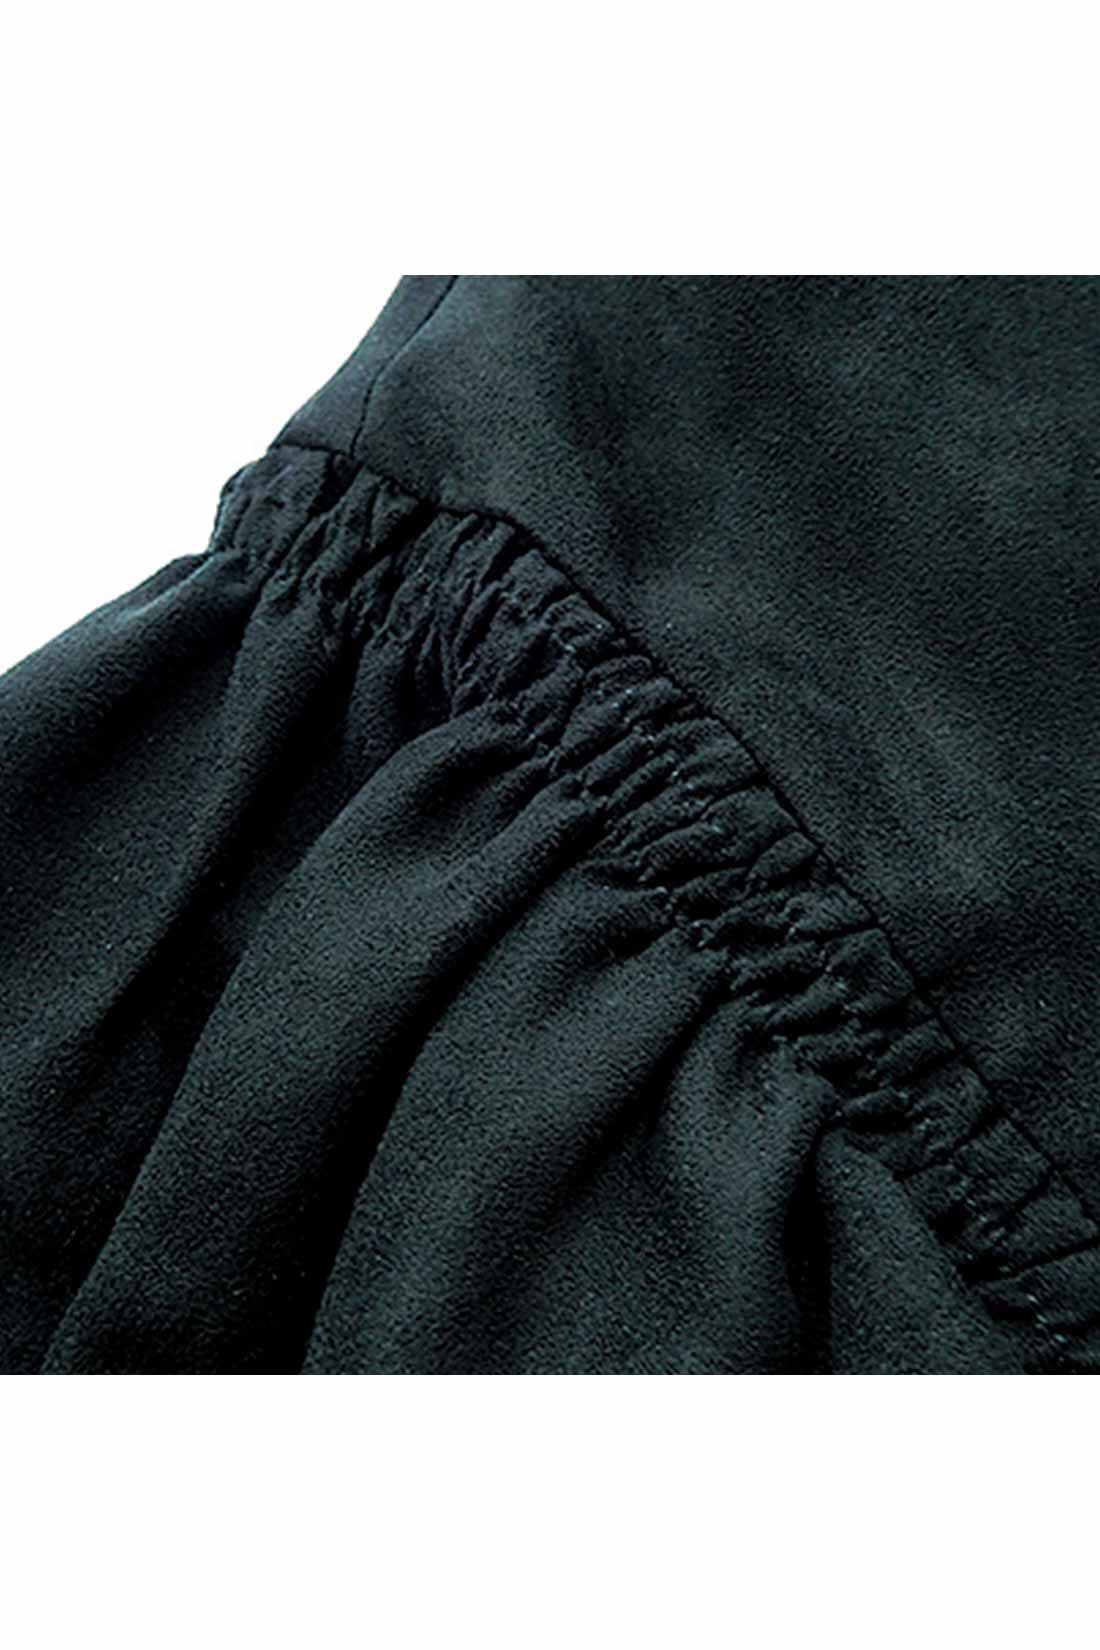 シロップ．|たーーっぷりボリューム袖のブラックドレス